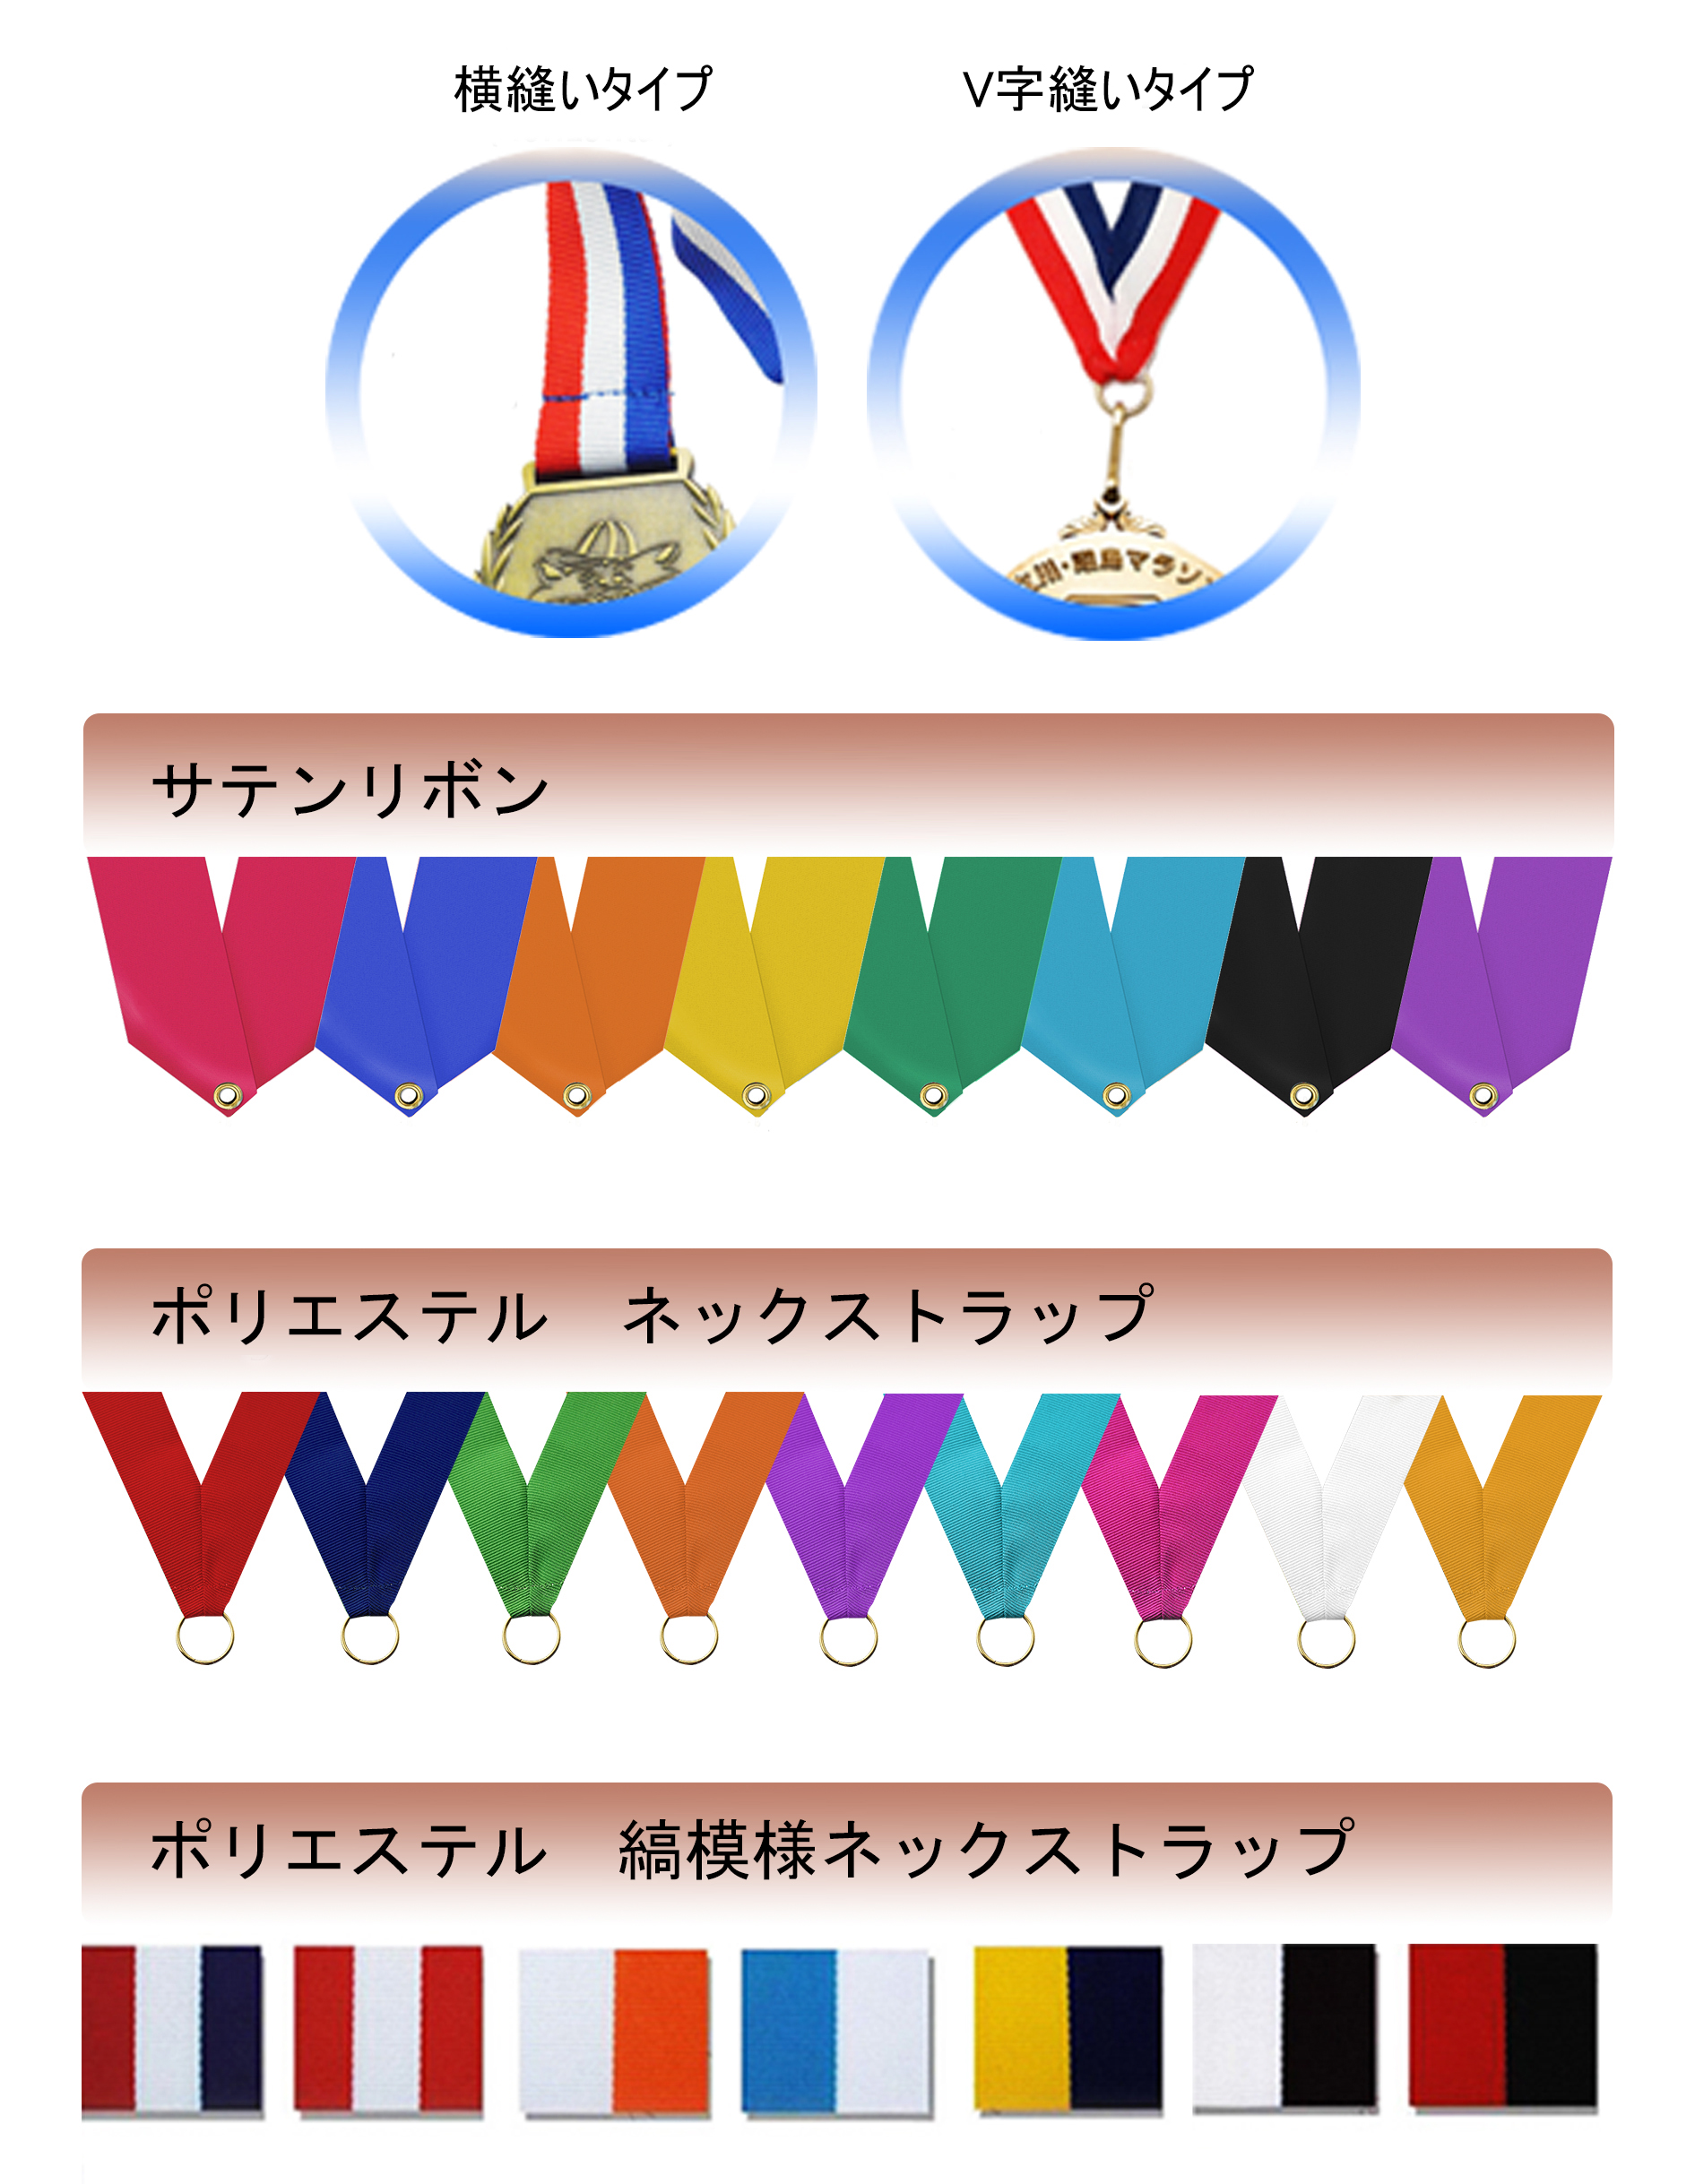 オリジナルメダル用各種リボンと縫い方